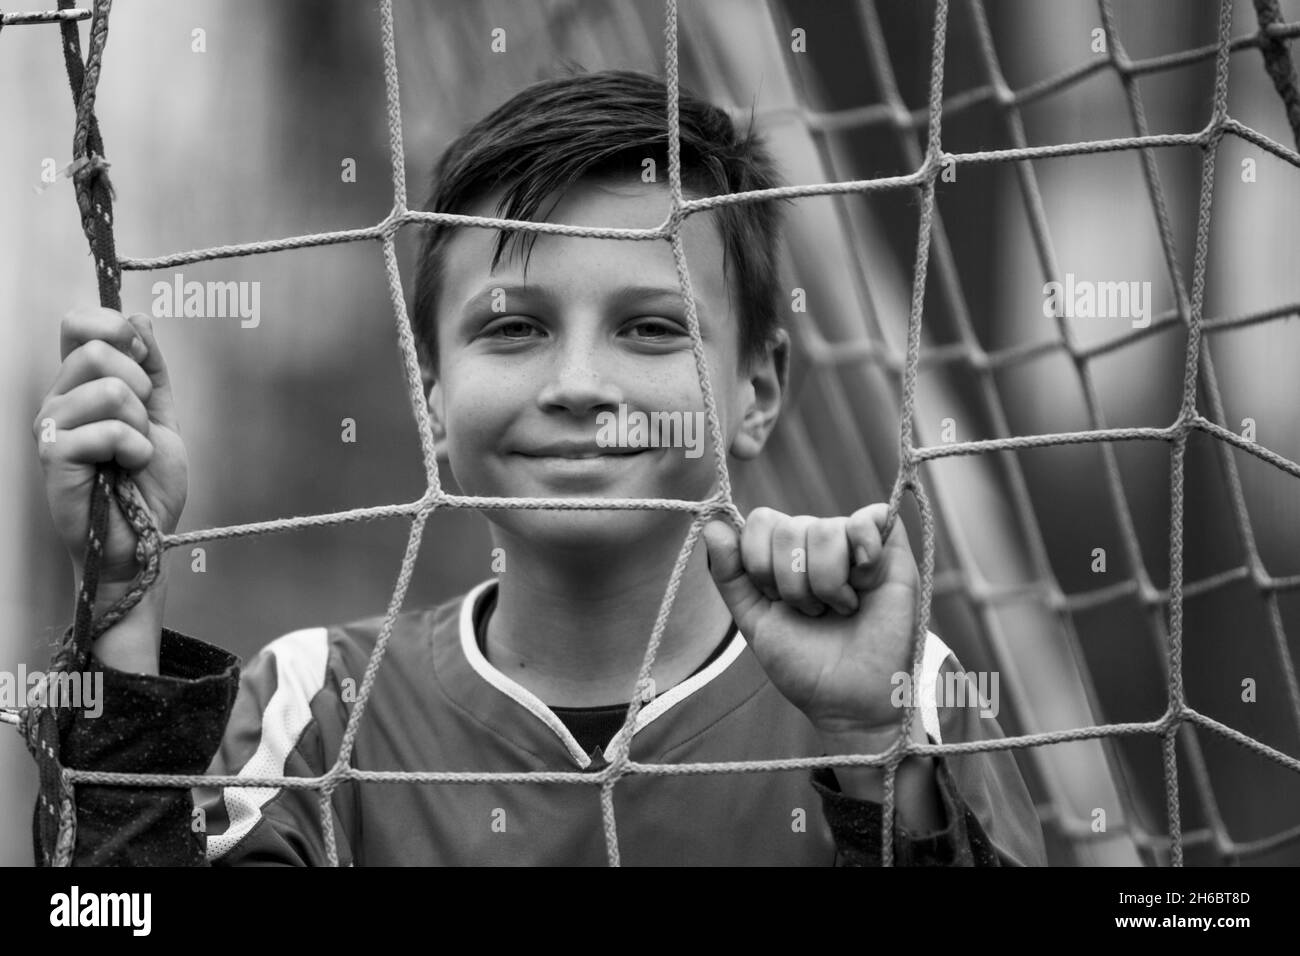 Un jeune garçon près d'un but sur le terrain de football.Photo en noir et blanc. Banque D'Images